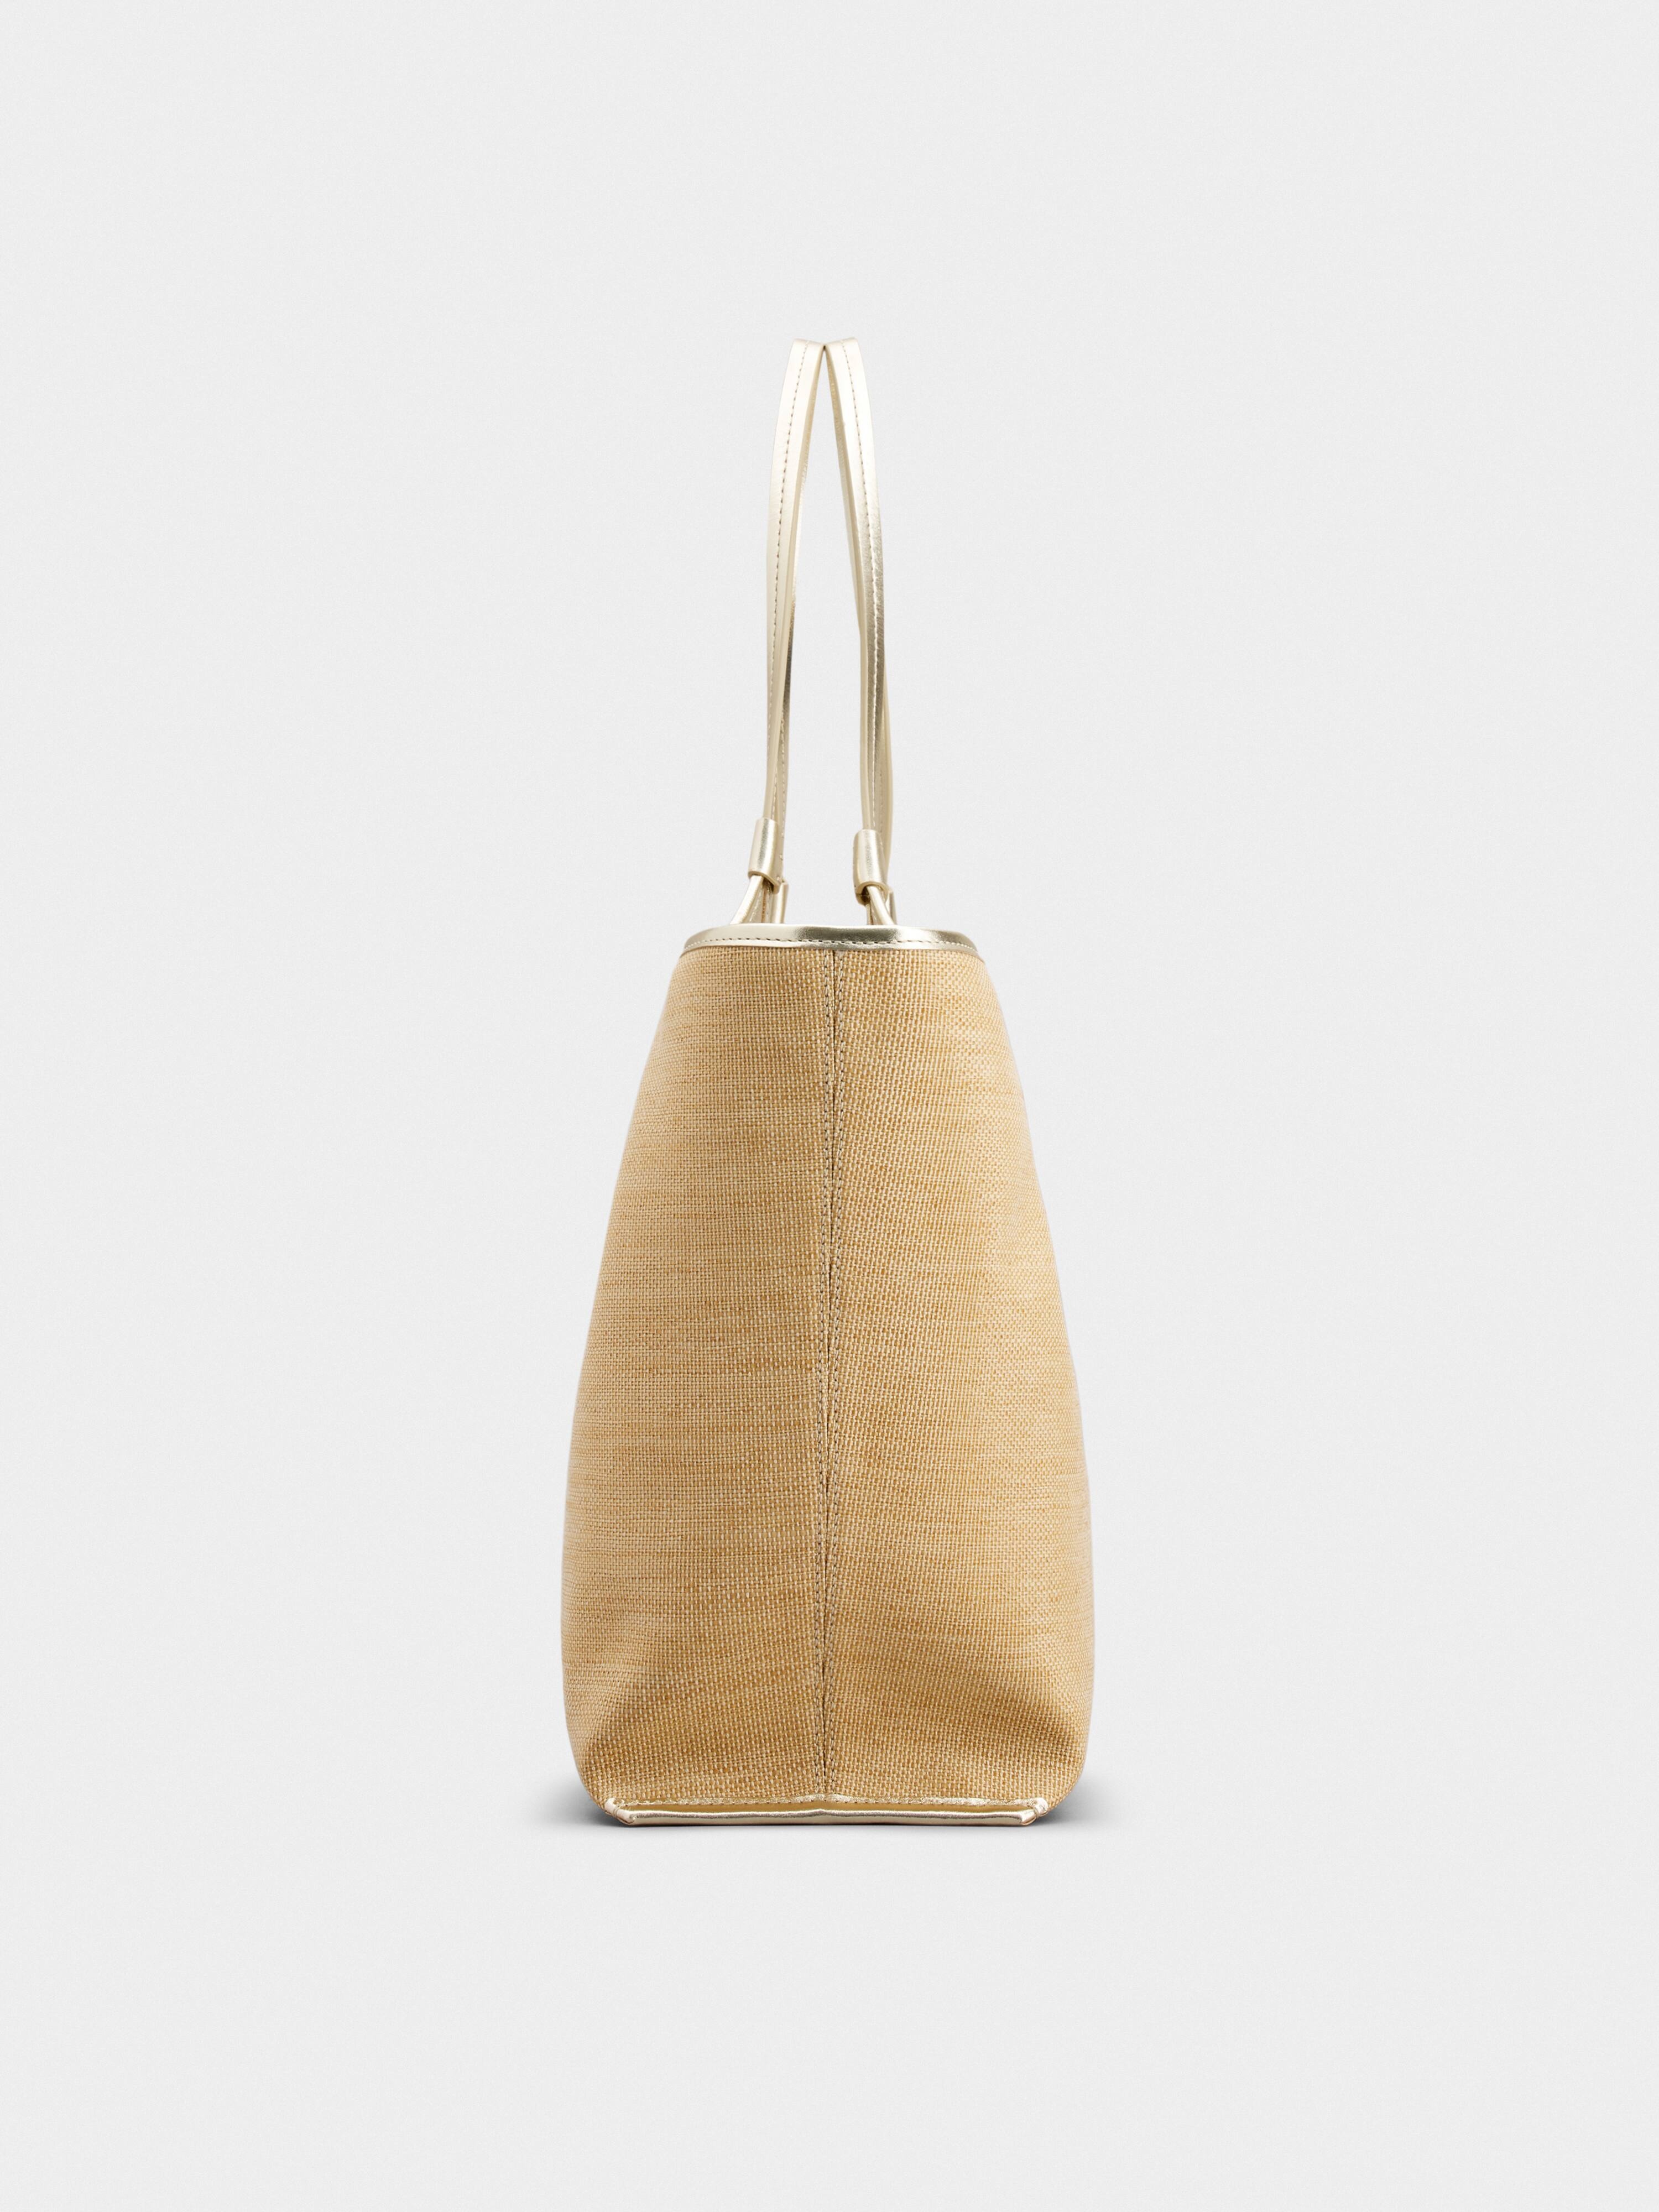 Viv' Choc Medium Shopping Bag in Fabric - 3